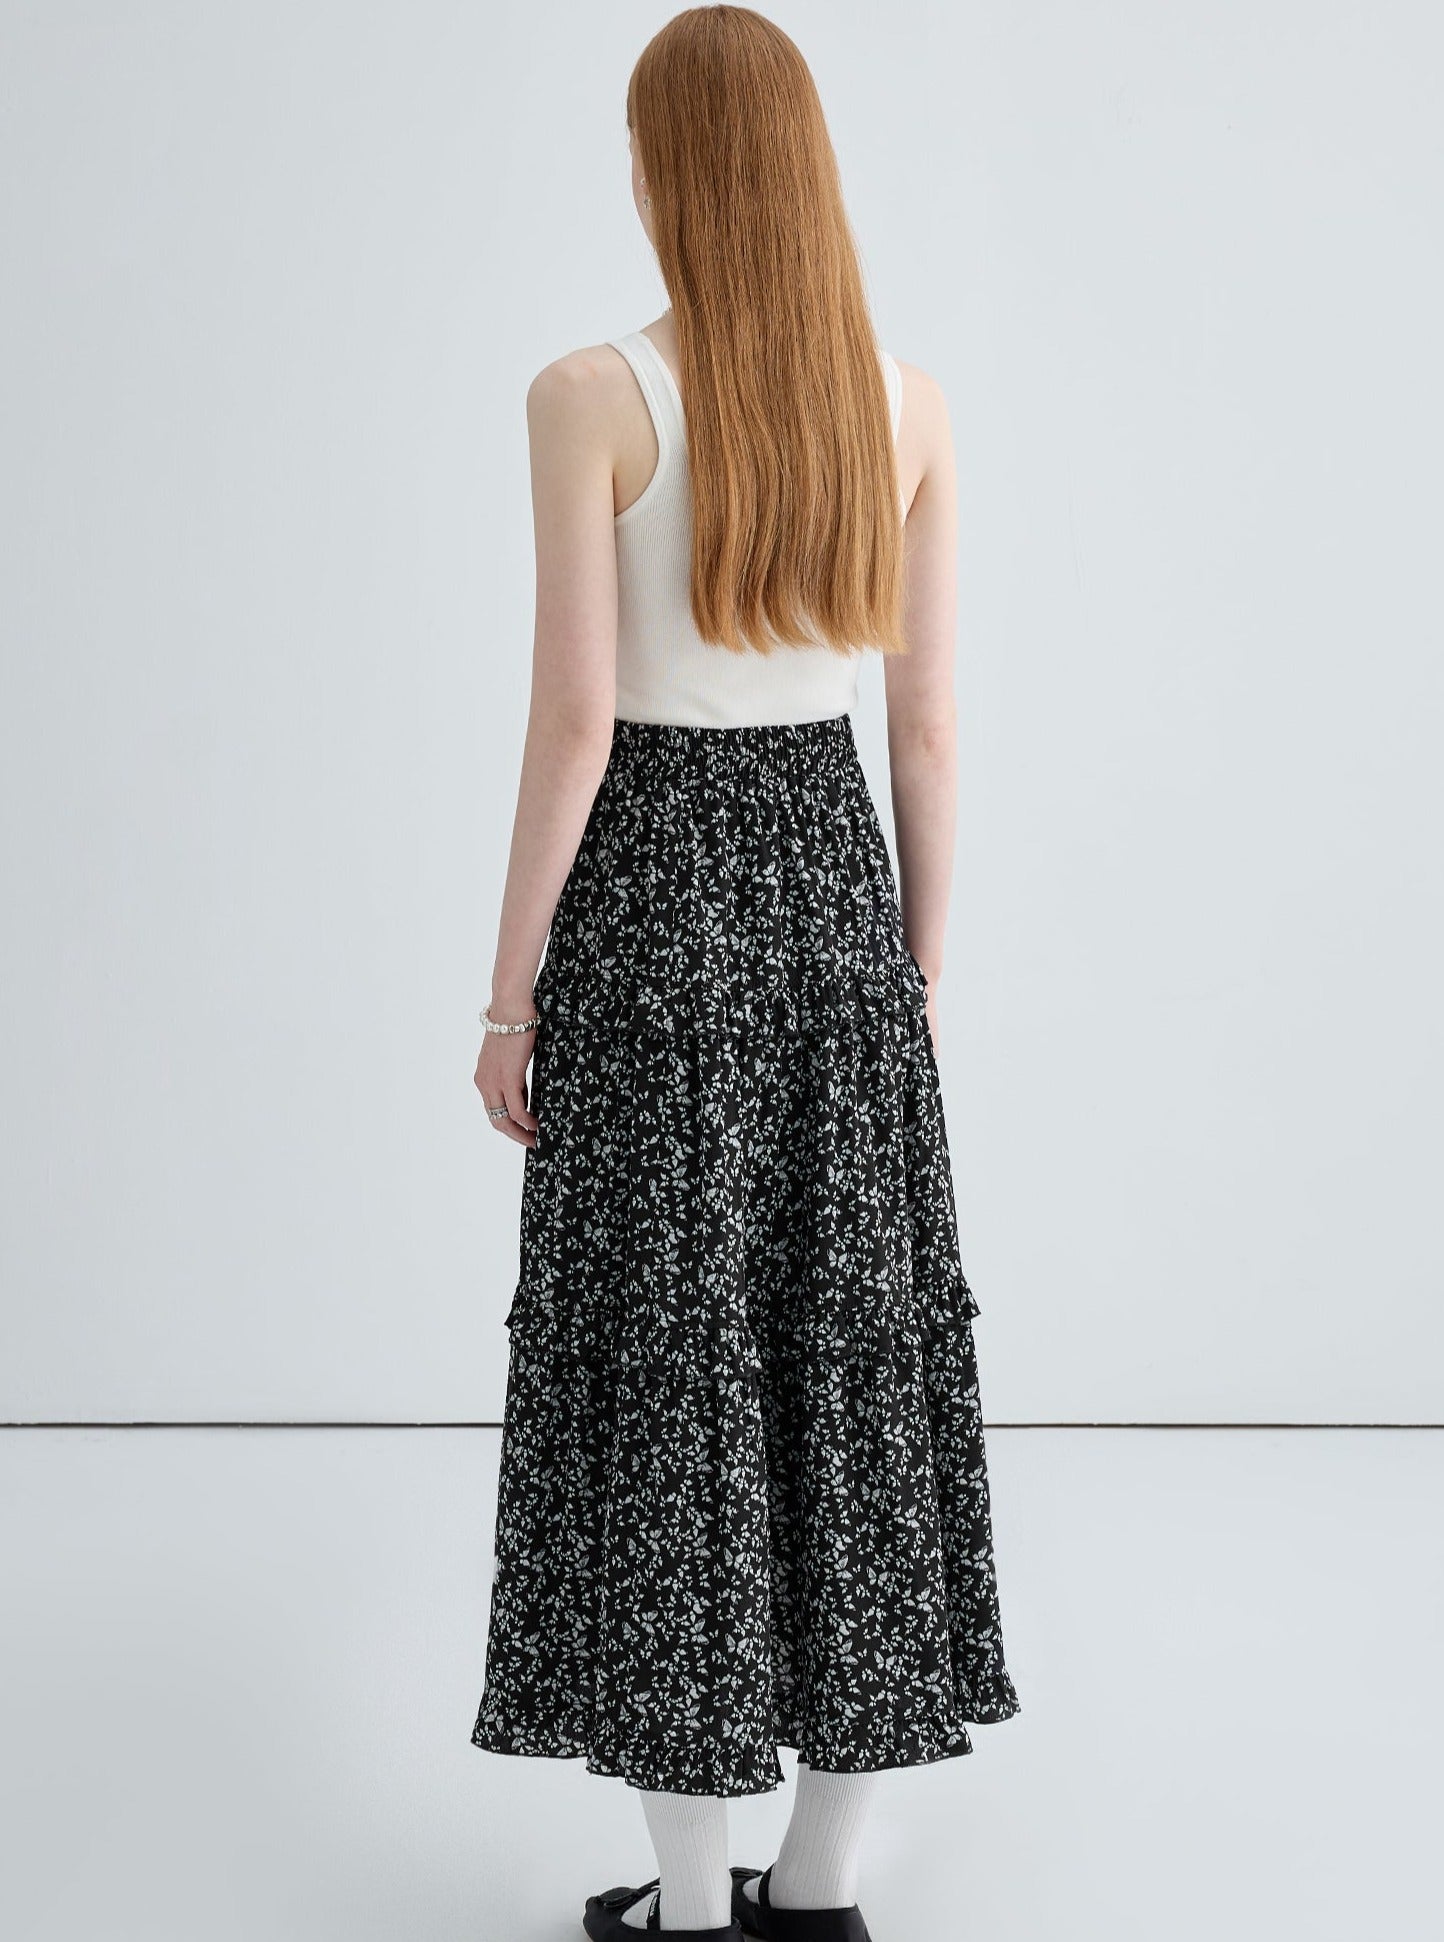 High Waist A-Line Retro Print Long Skirt